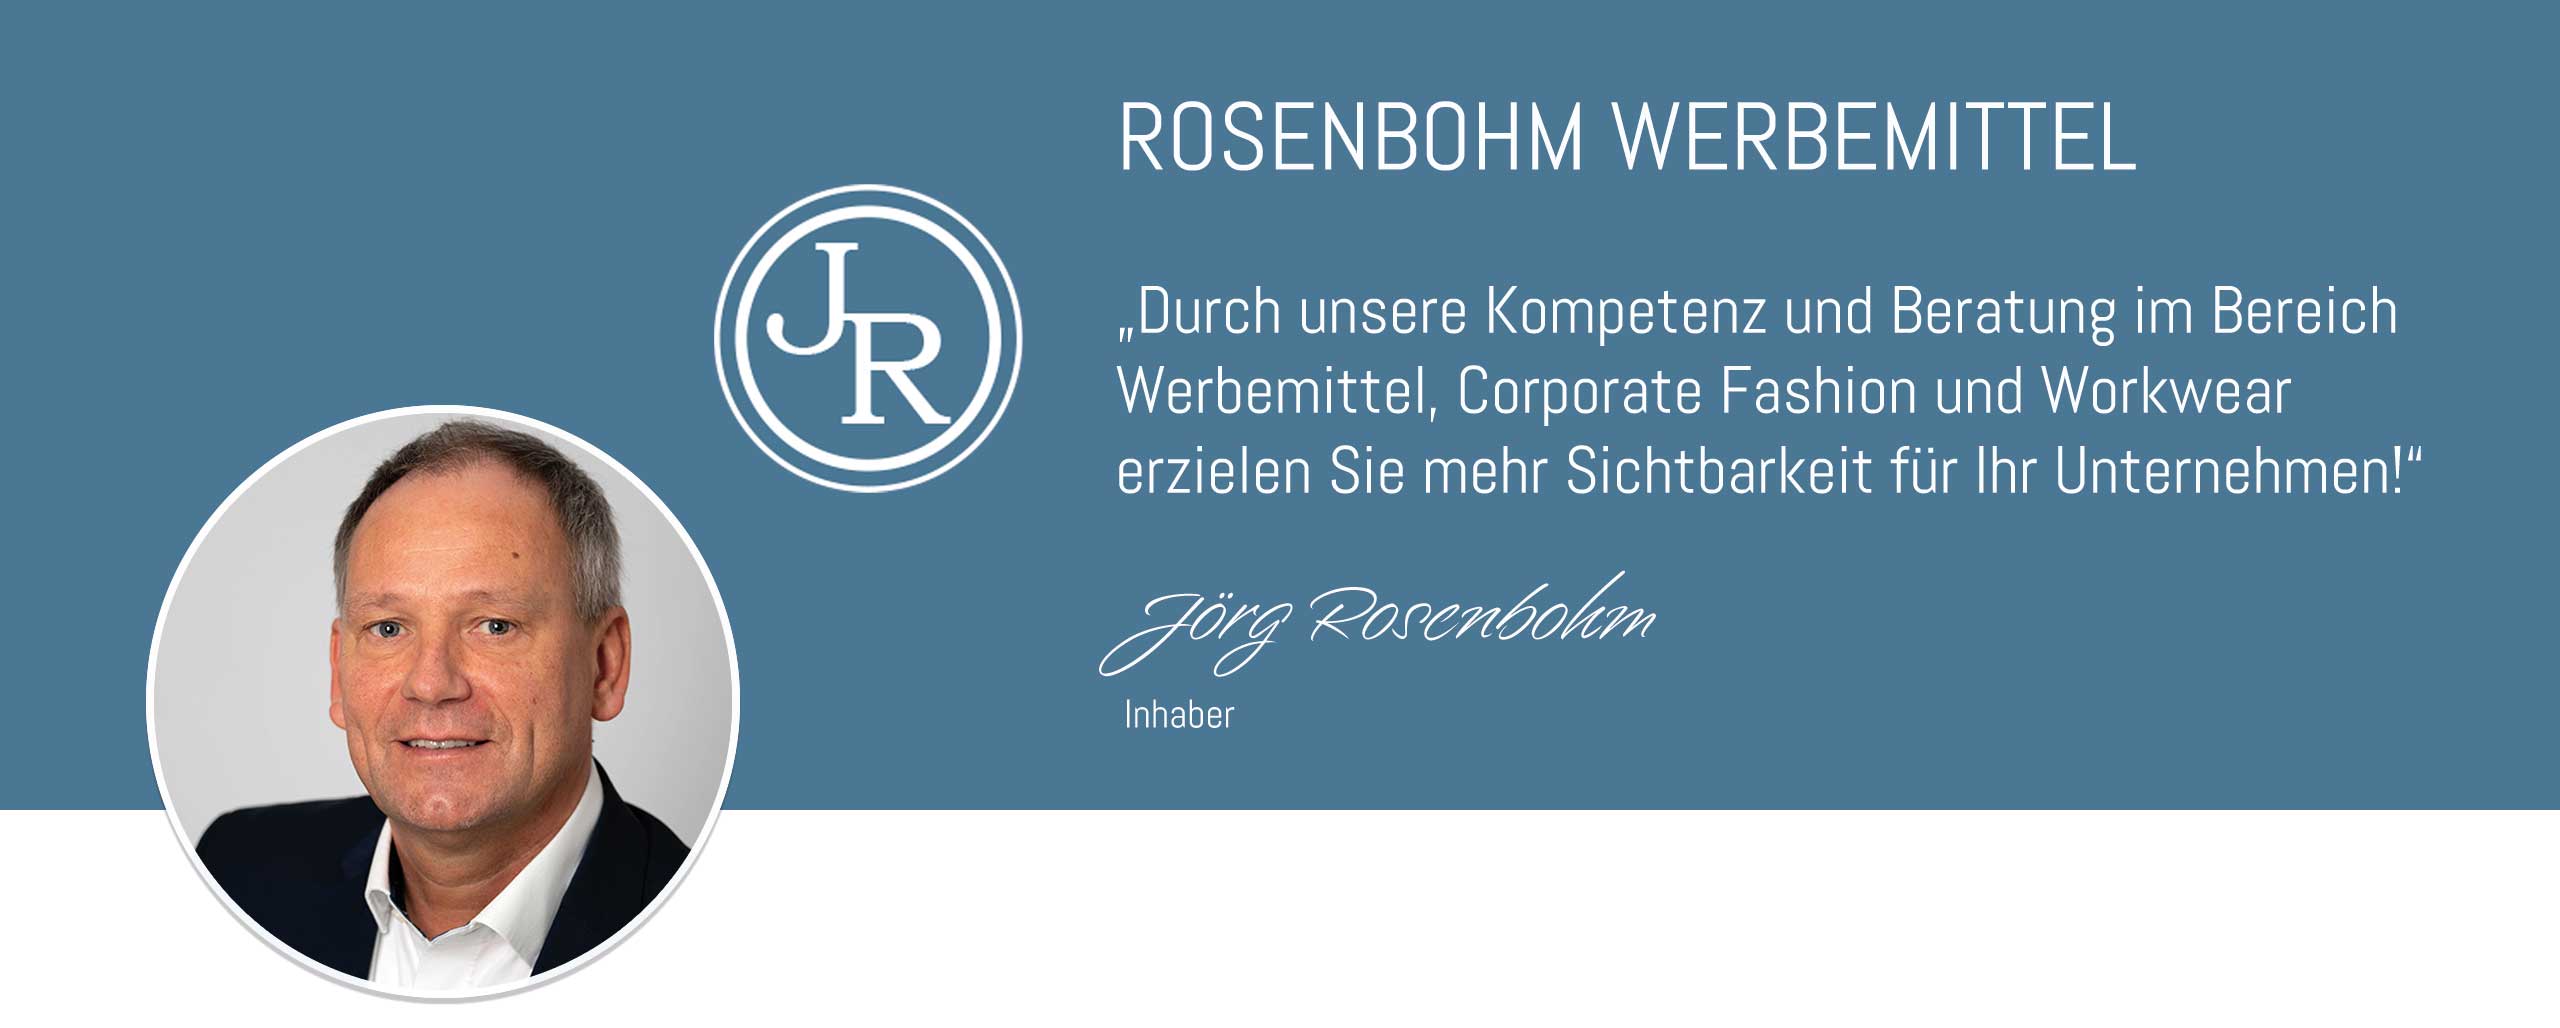 Rosenbohm-Werbemittel-Corporate-Fashion-Workwear-Werbemittel-Titelbild